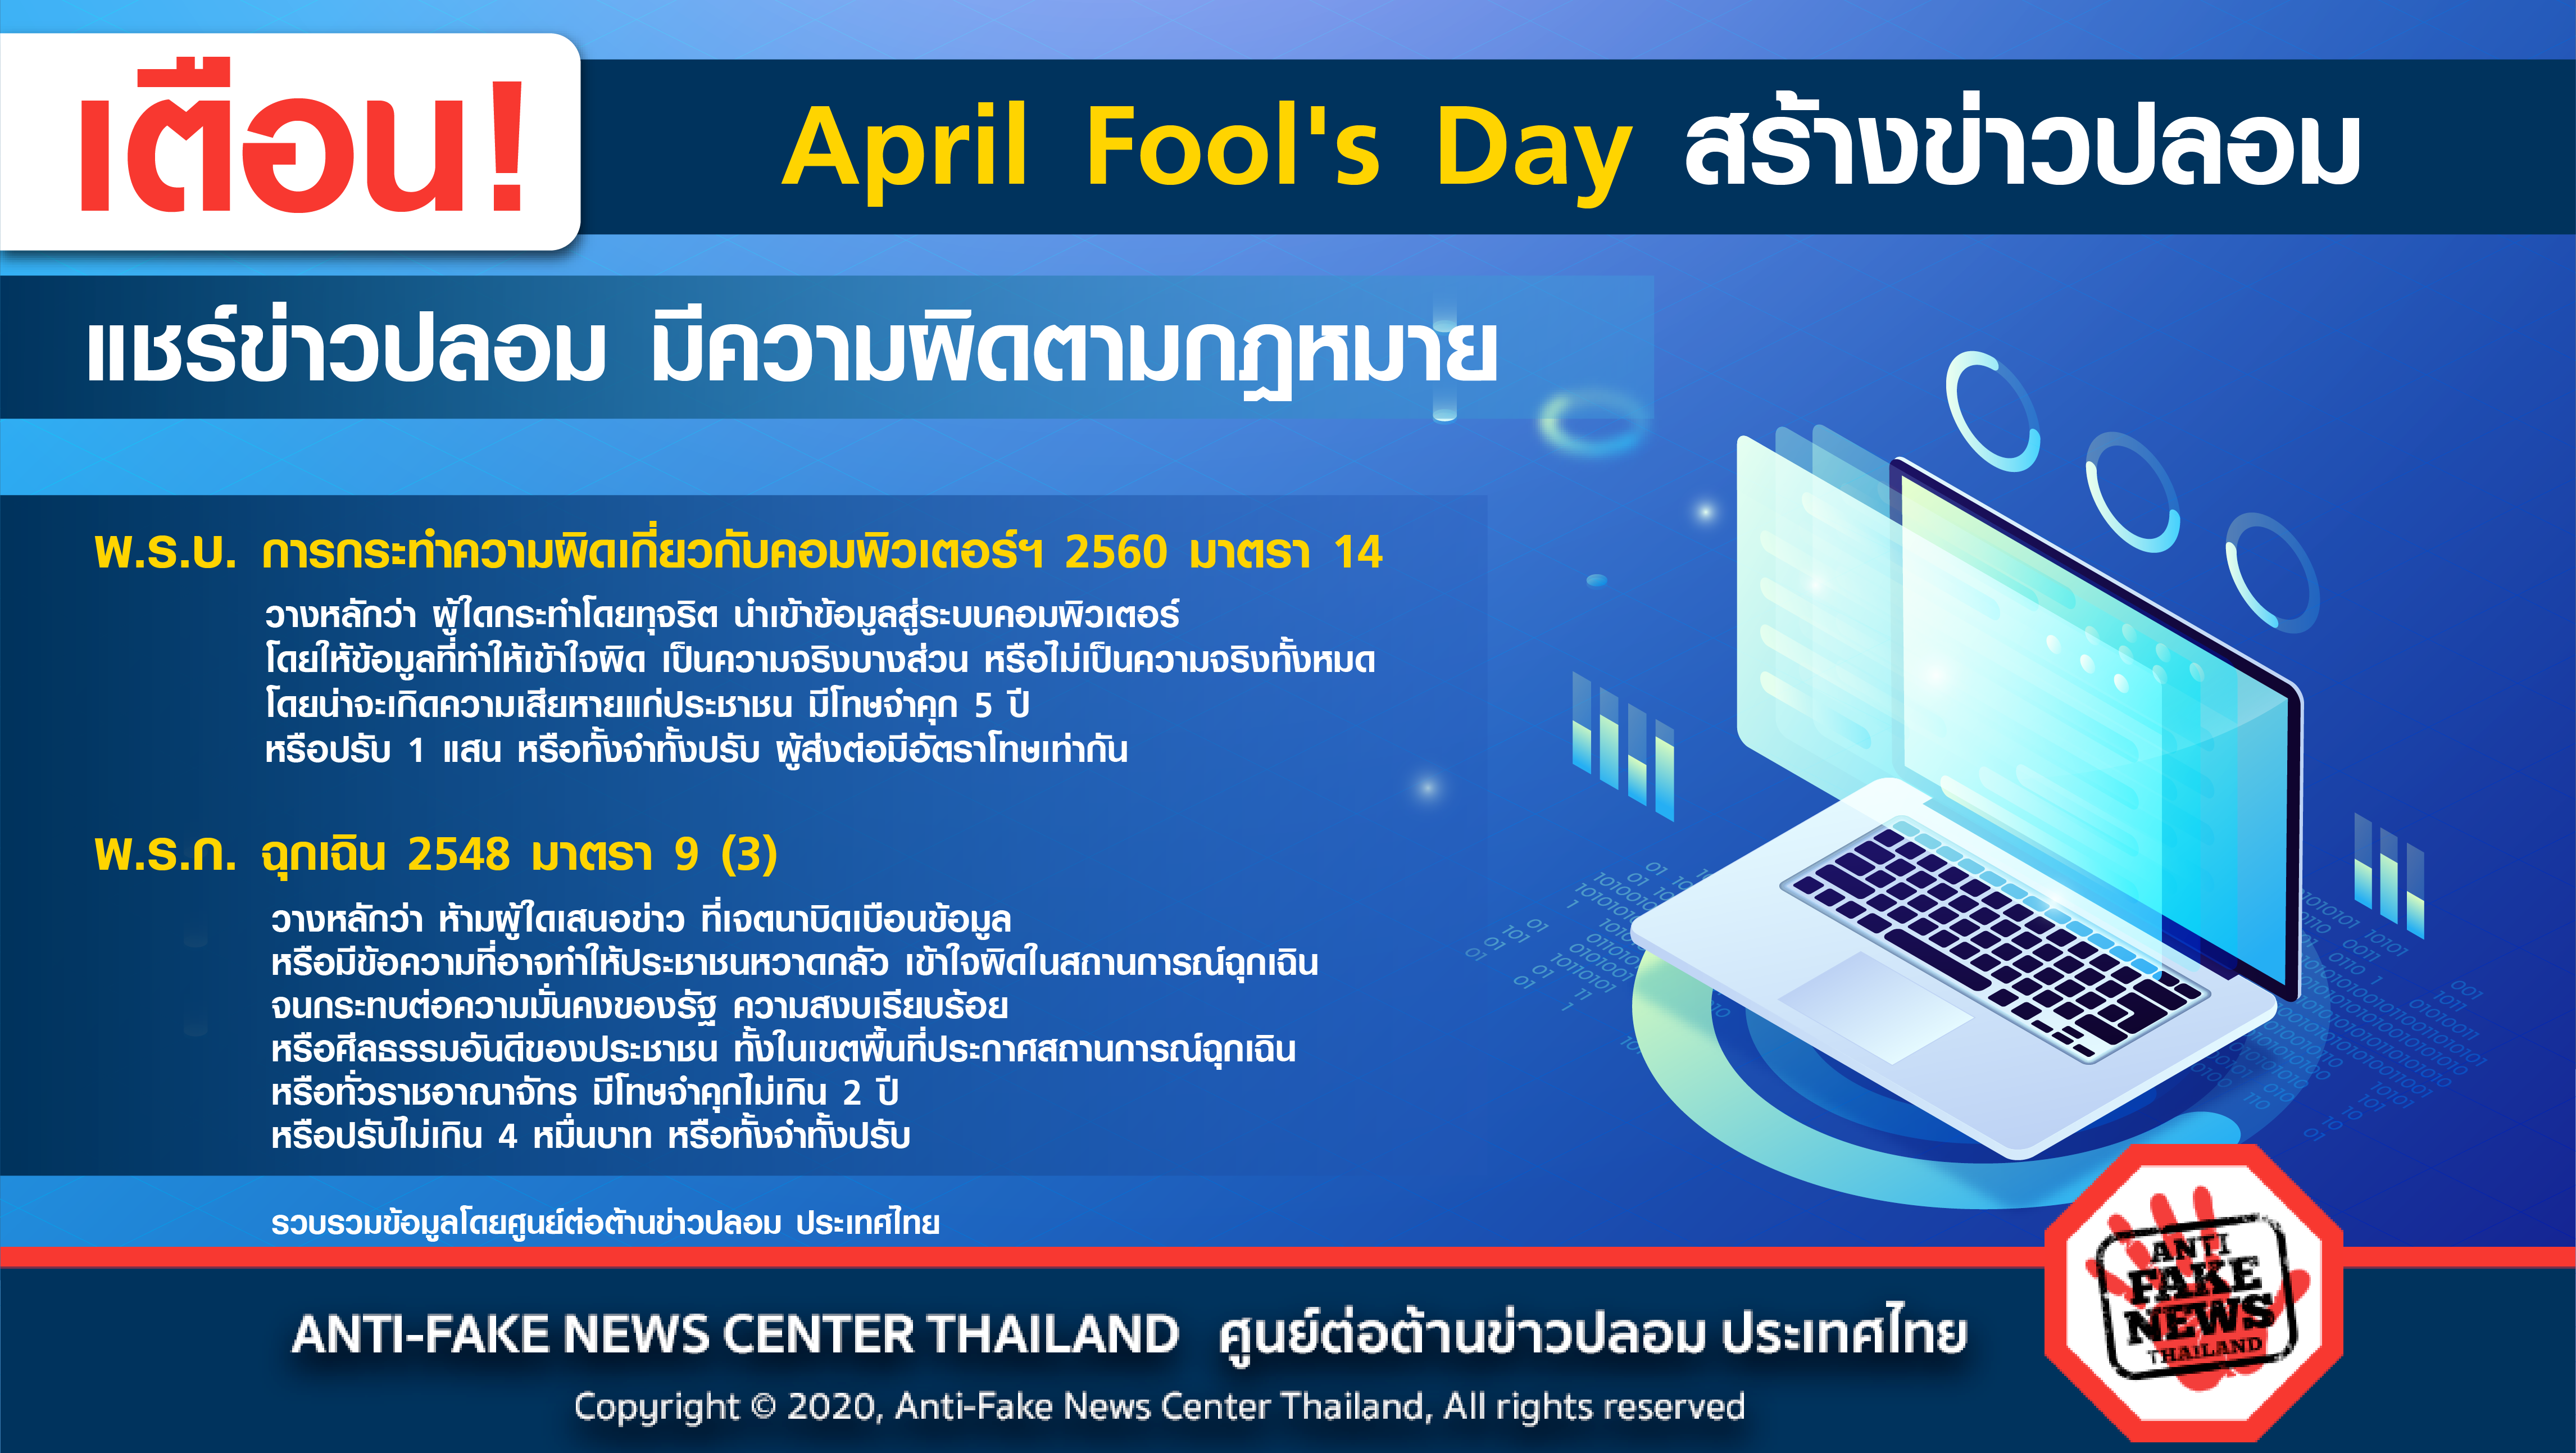 April Fool s Day สร้างข่าวปลอม แชร์ข่าวปลอม มีความผิดตามกฎหมาย Web